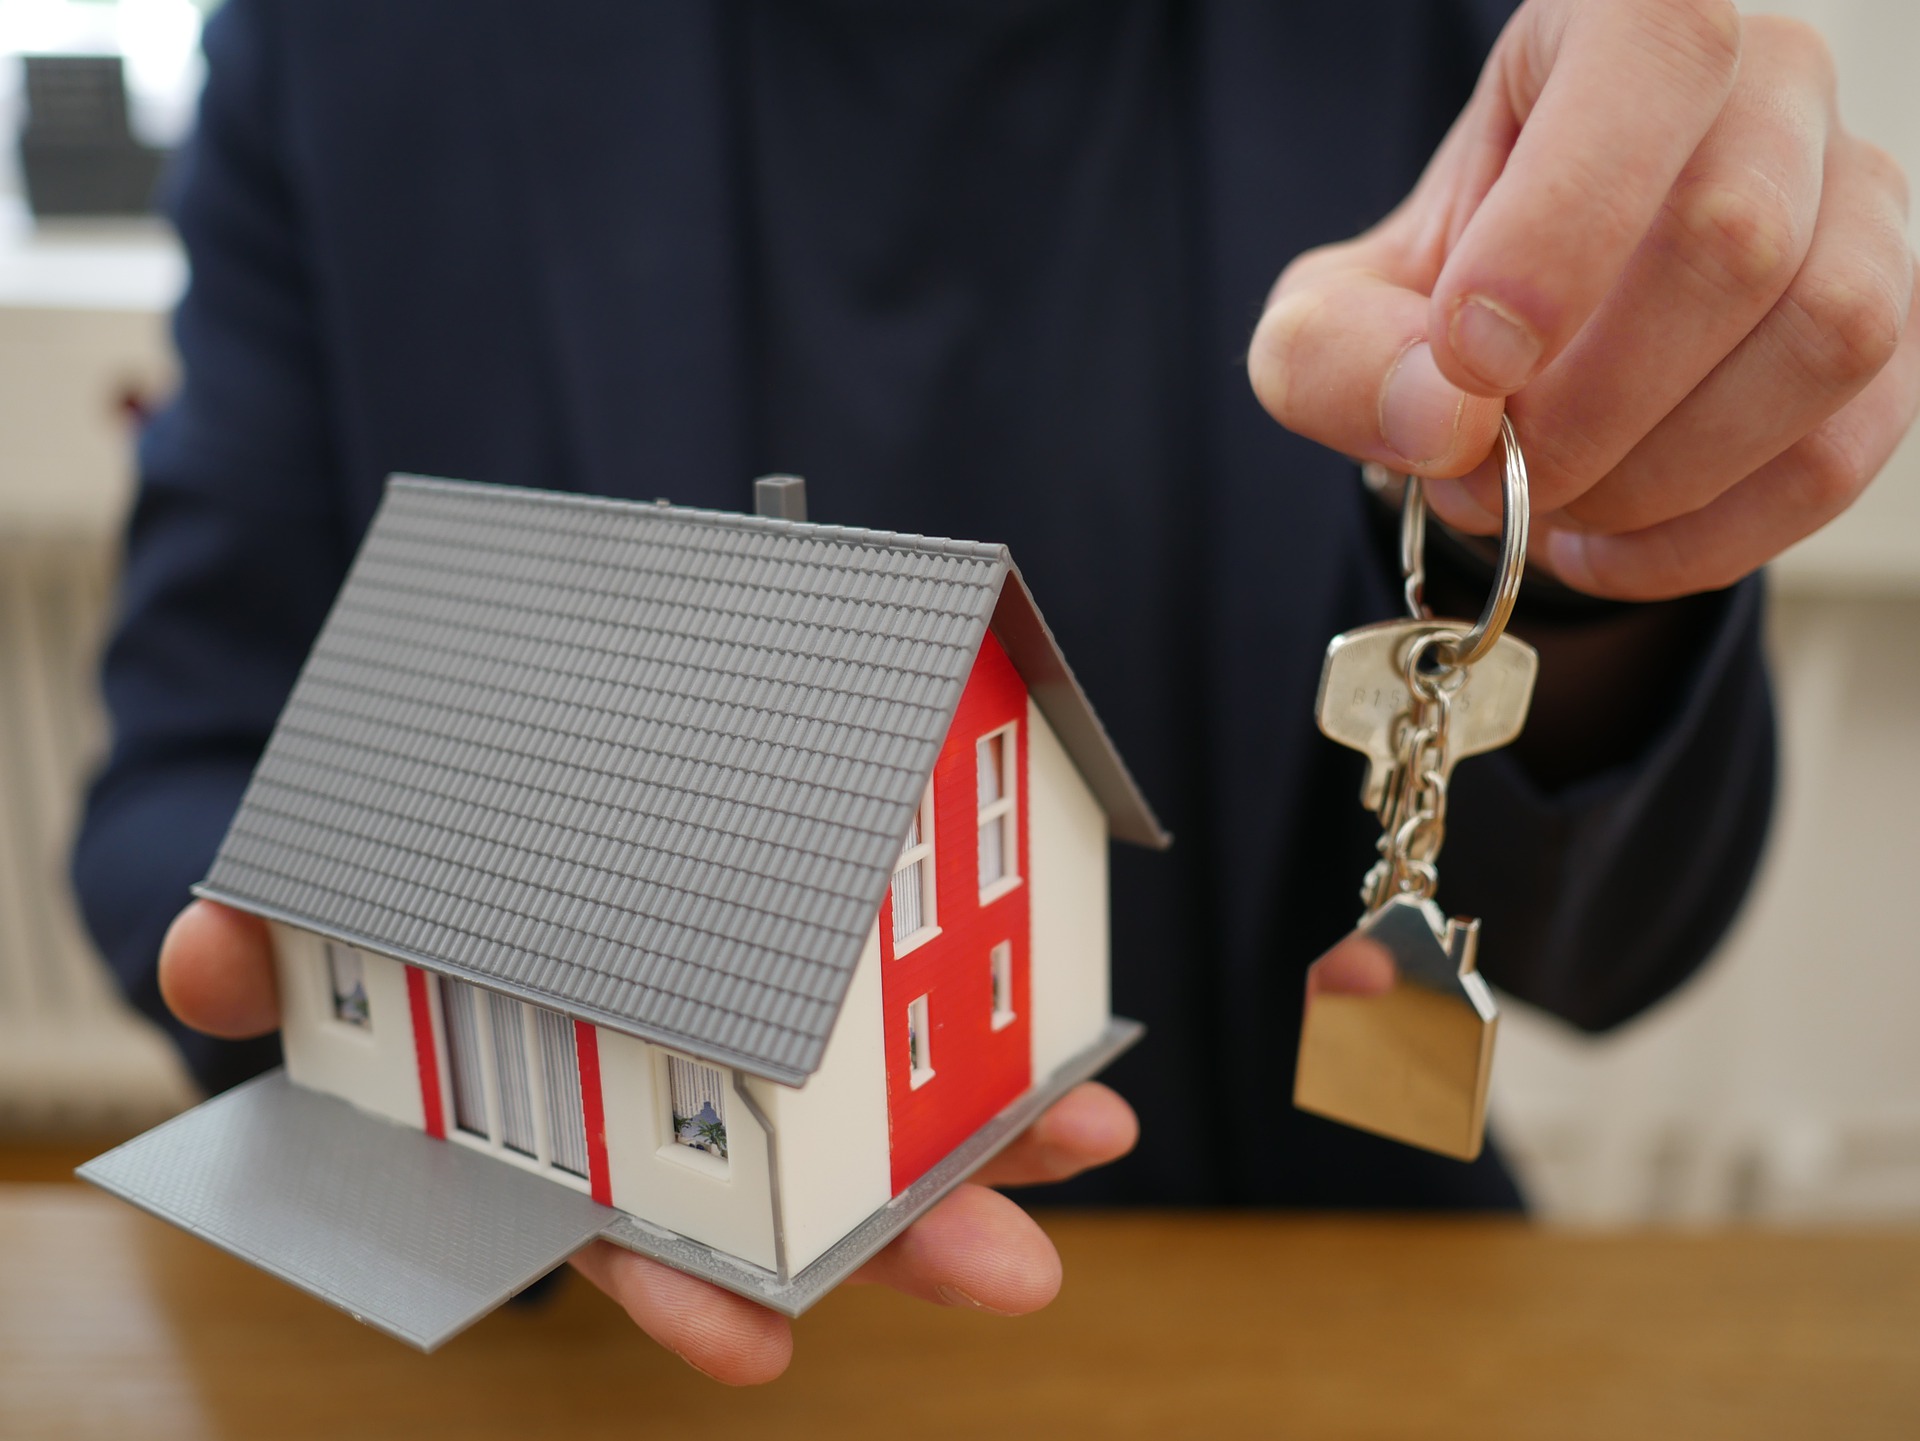 Huizenkopers kiezen vaker voor kortere rentevaste periode bij hypotheken